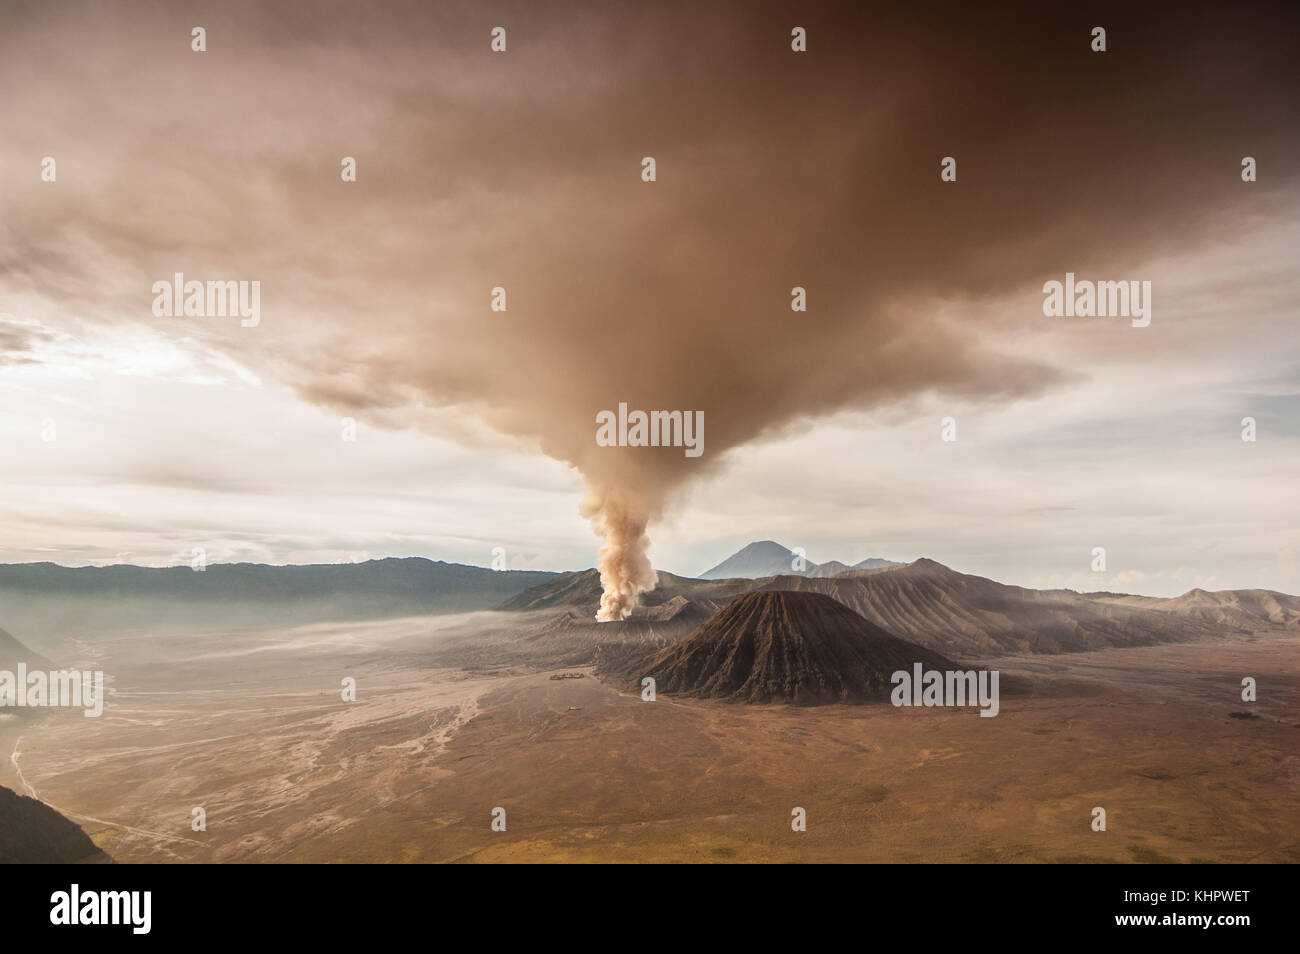 Eruption des Mount Bromo. vulkanische Asche in den Himmel während der letzte Ausbruch im Jahr 2010. die Farbe des Himmels und Land dramatisch verändert. Stockfoto